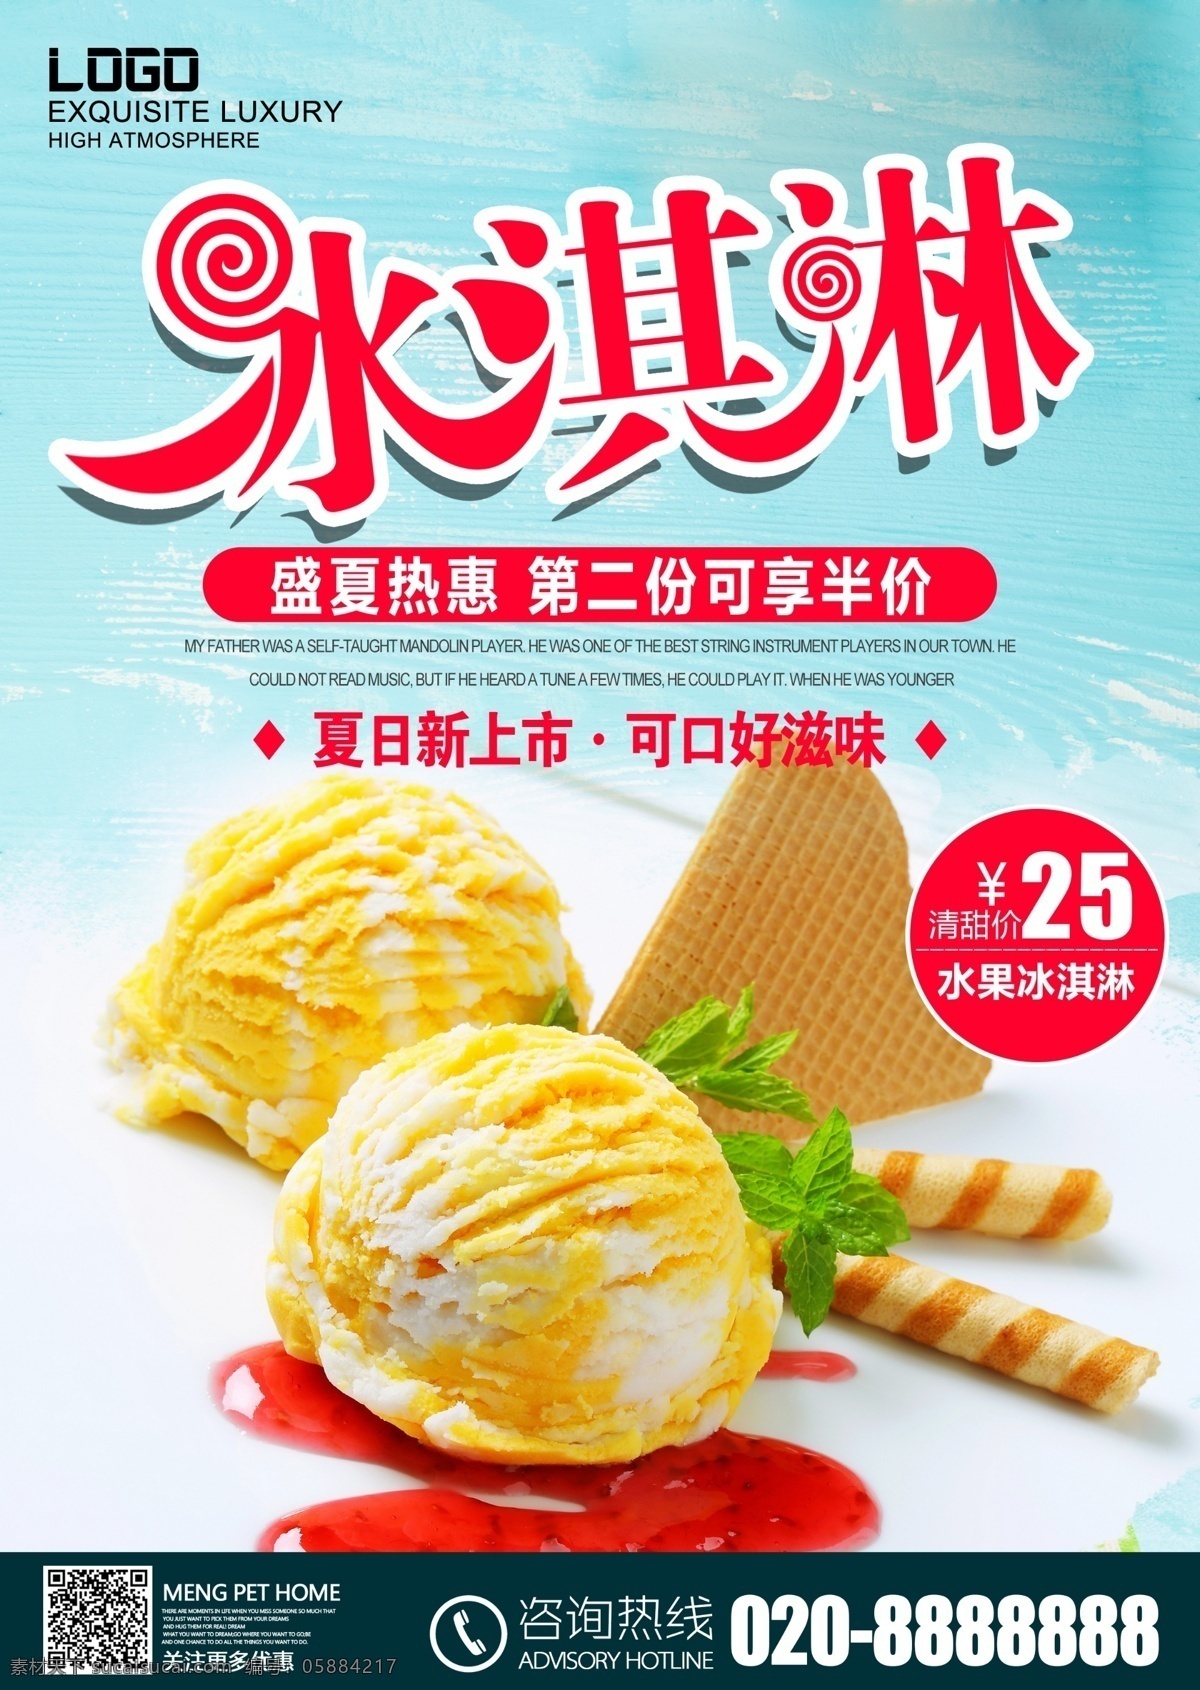 甜品 甜点 冰淇淋 夏季食品 美食 美食海报 冰激凌 雪糕 蓝色木板背景 便利店 促销 海报 模板